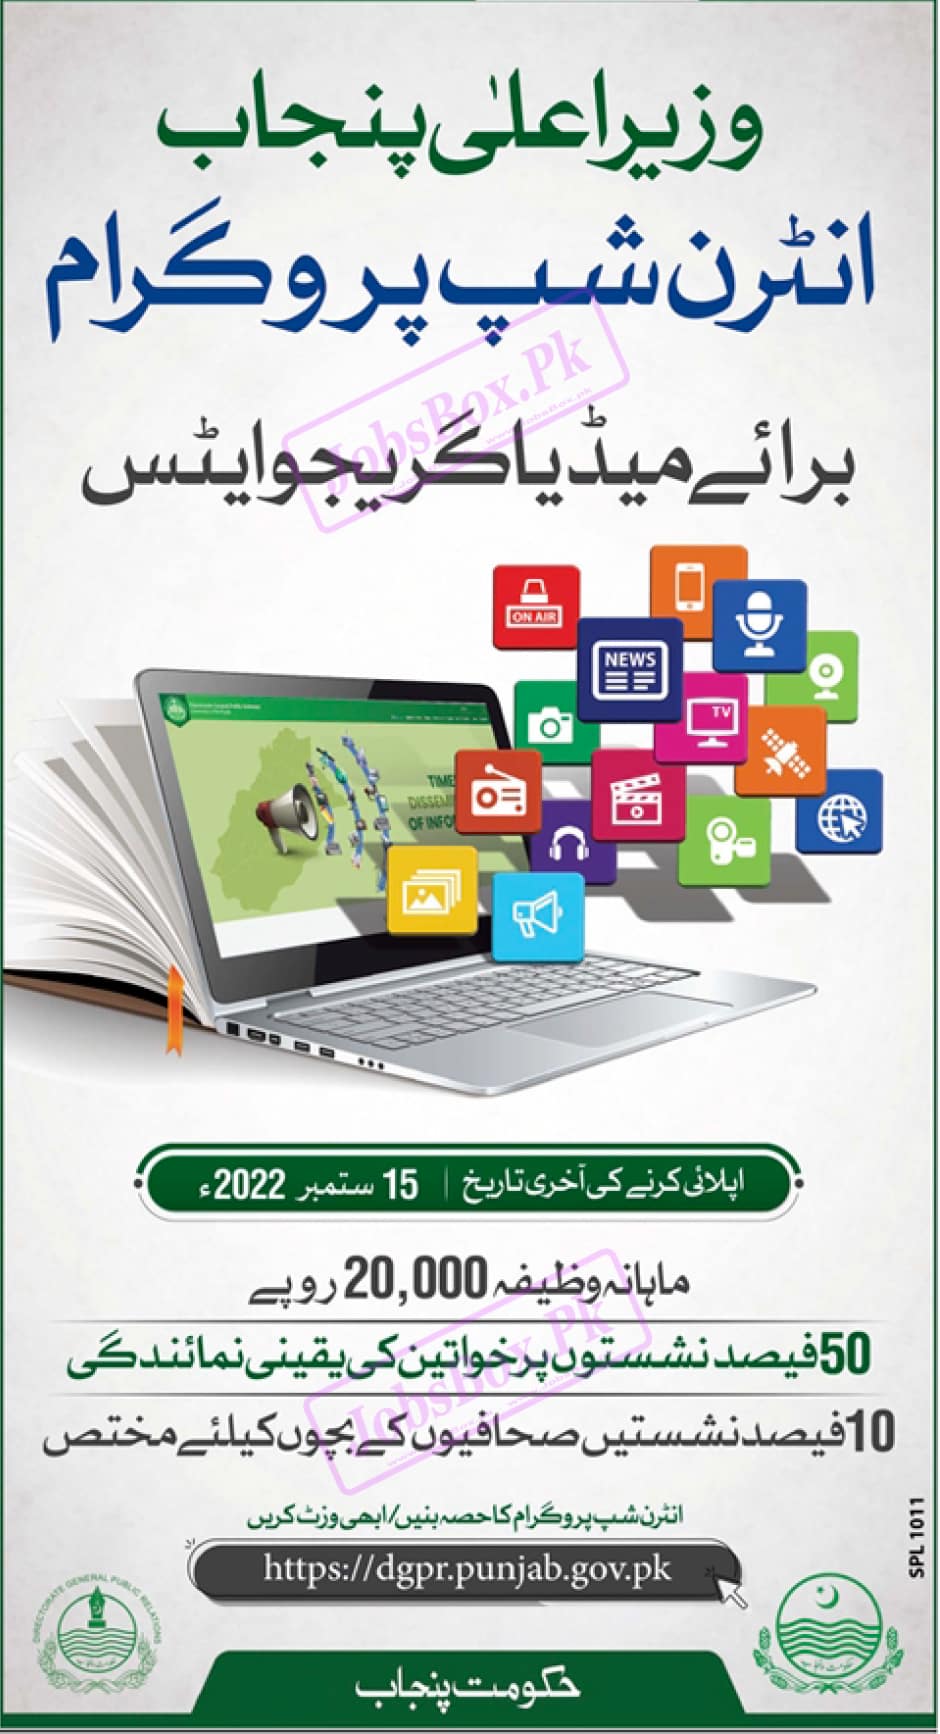 CM Punjab Internships 2022 Online Form